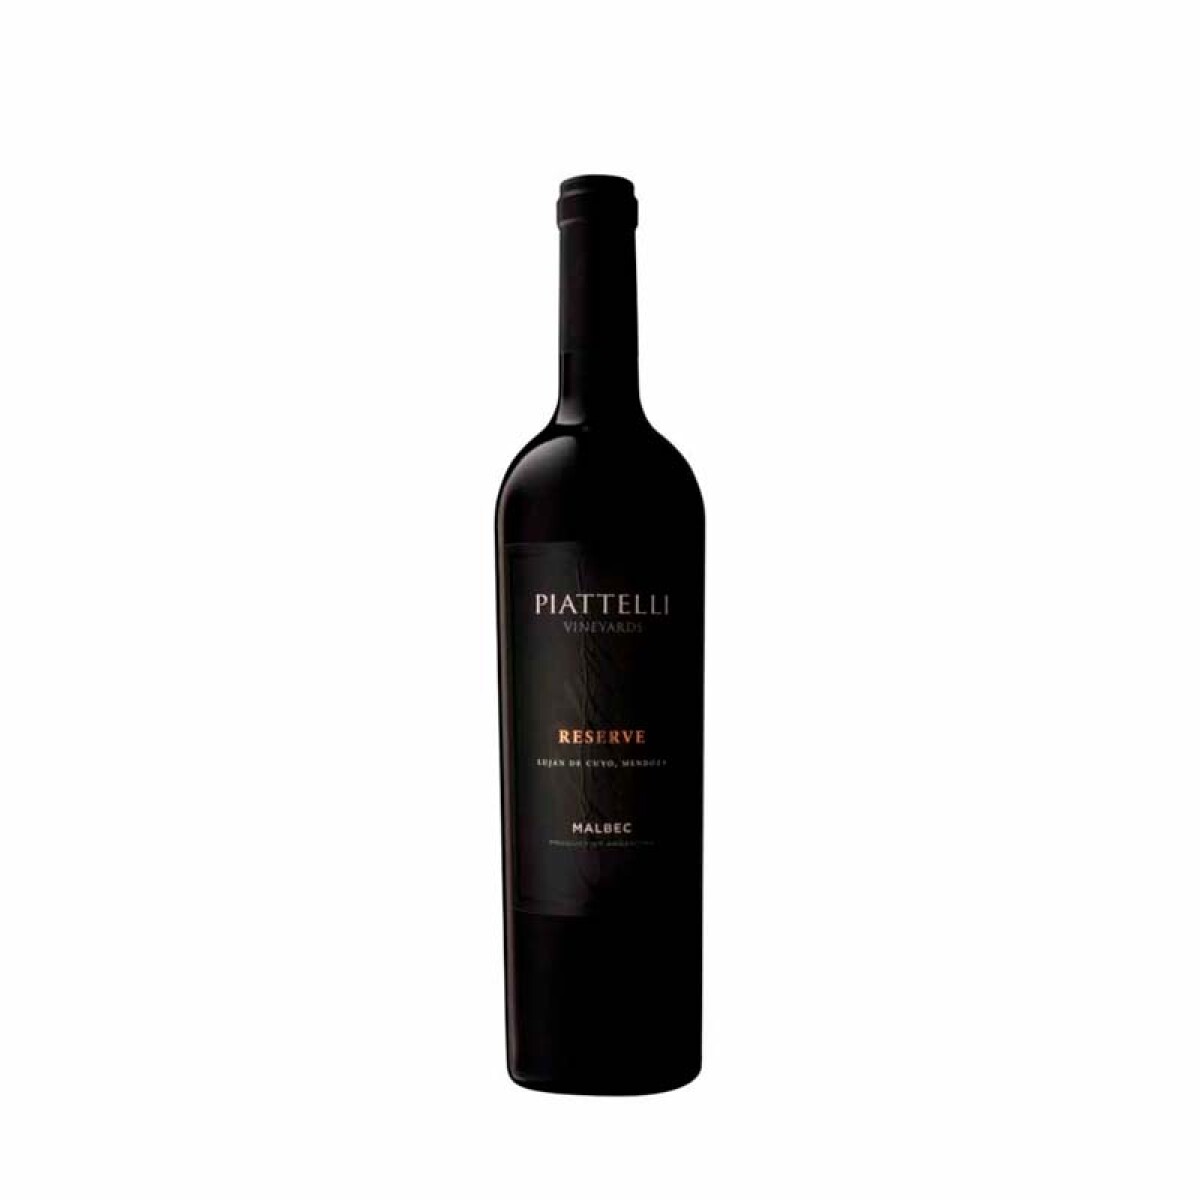 Vino Piattelli Reserva Malbec Mendoza - 750 ml 